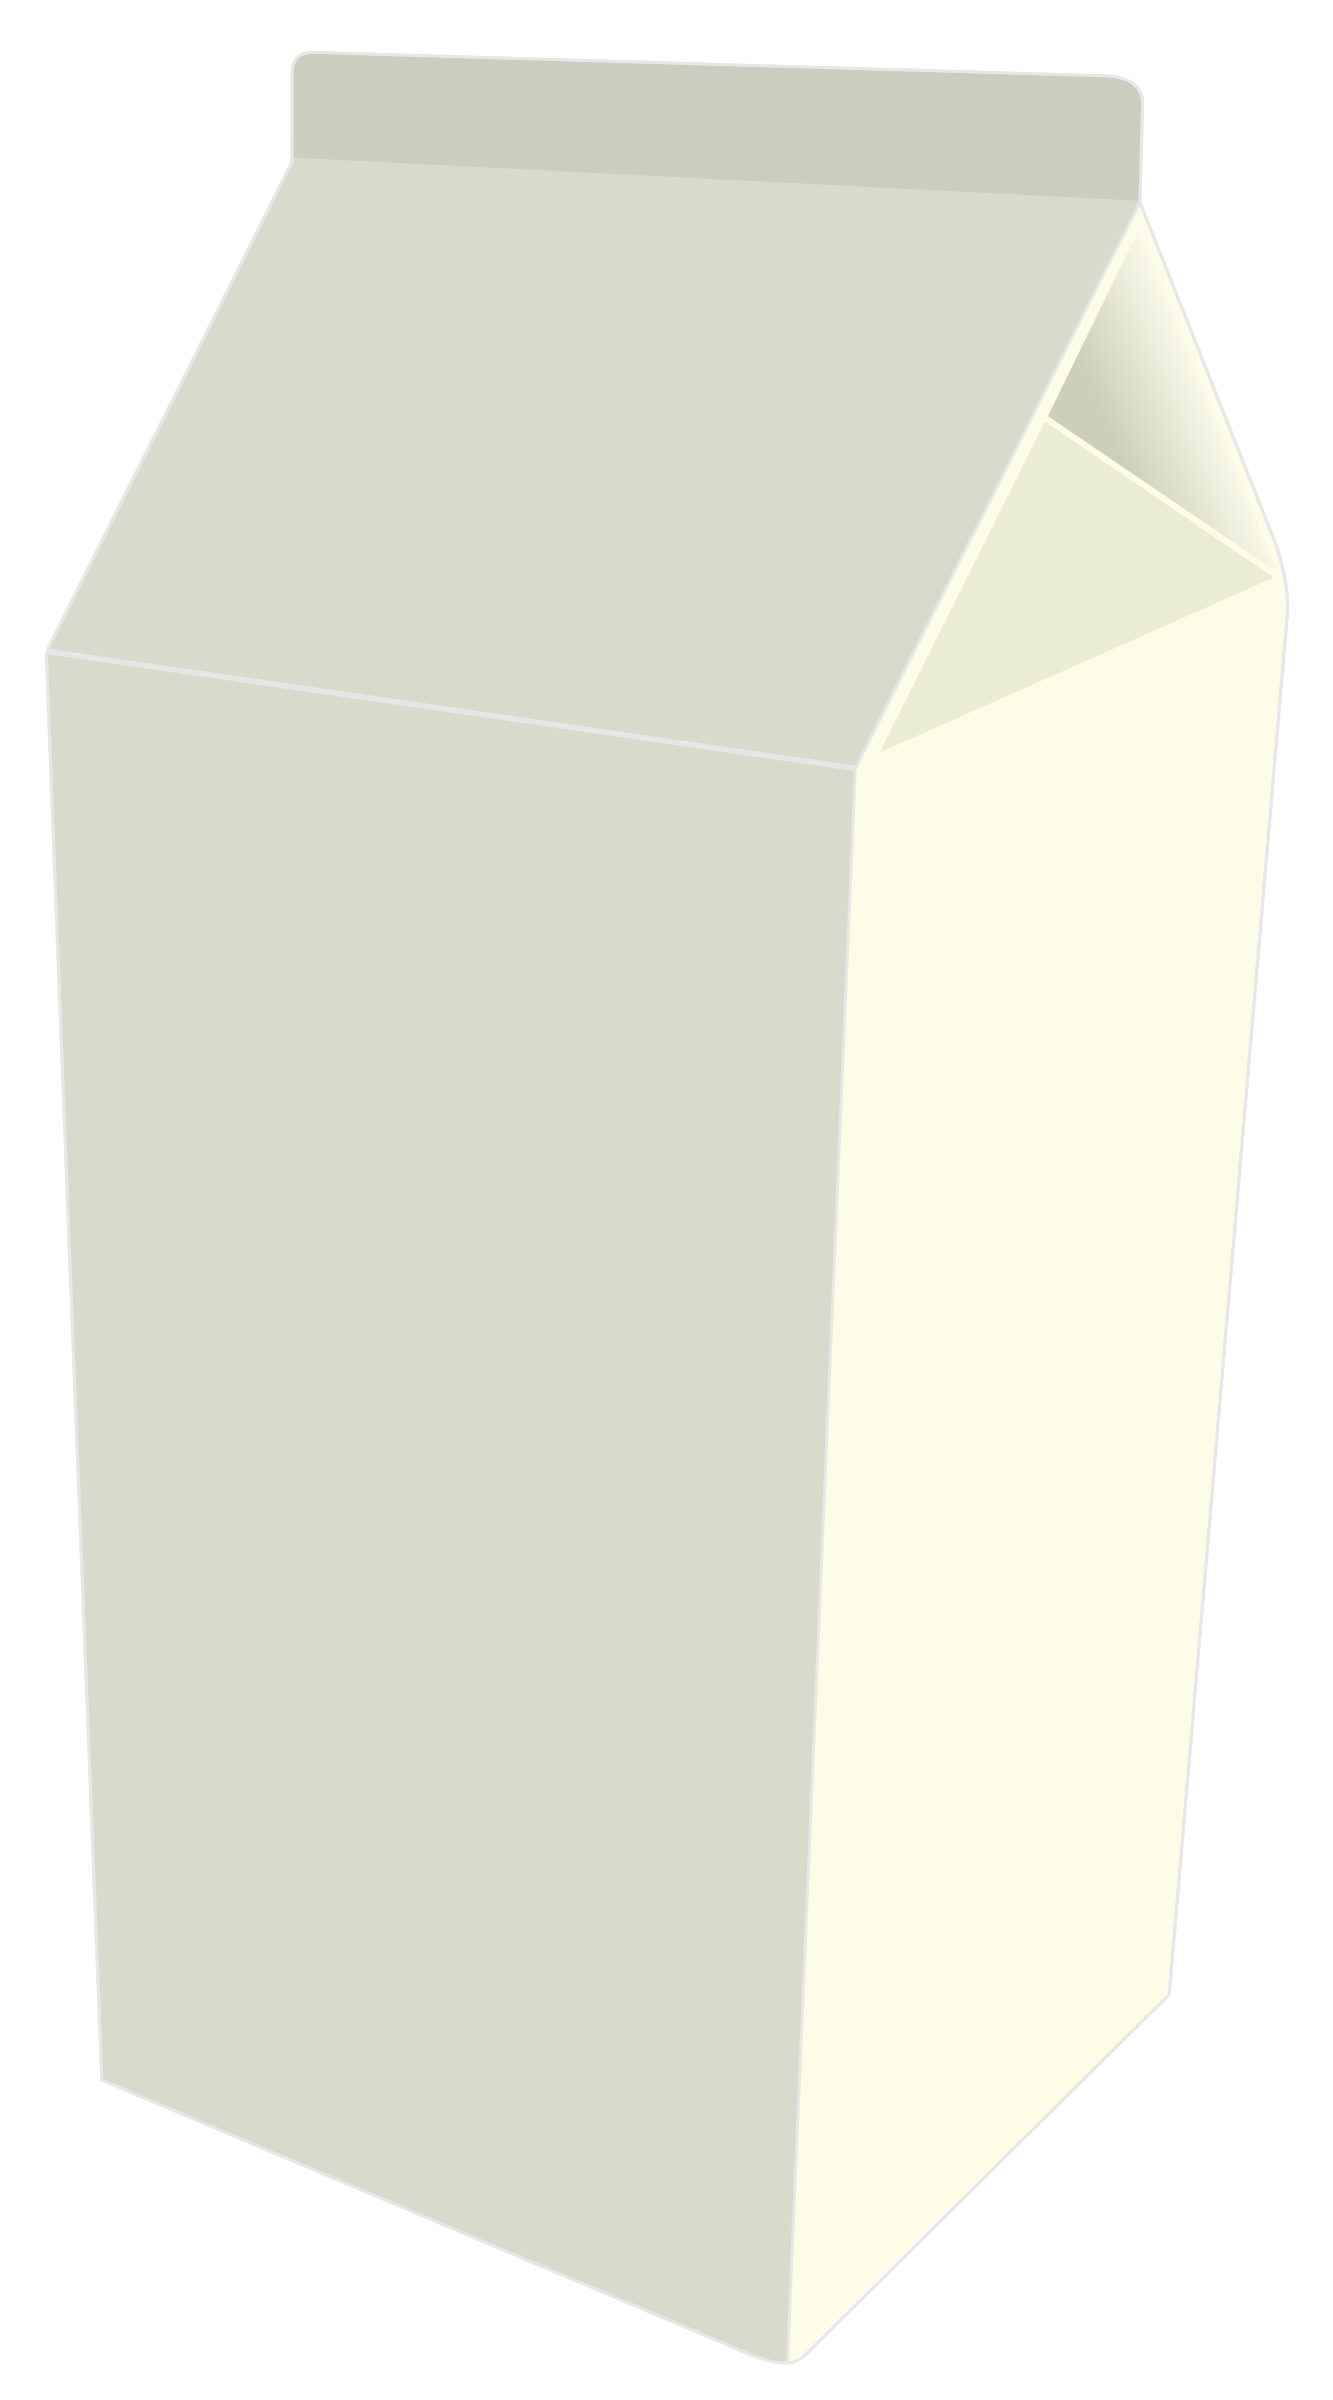 दूध का डब्बा